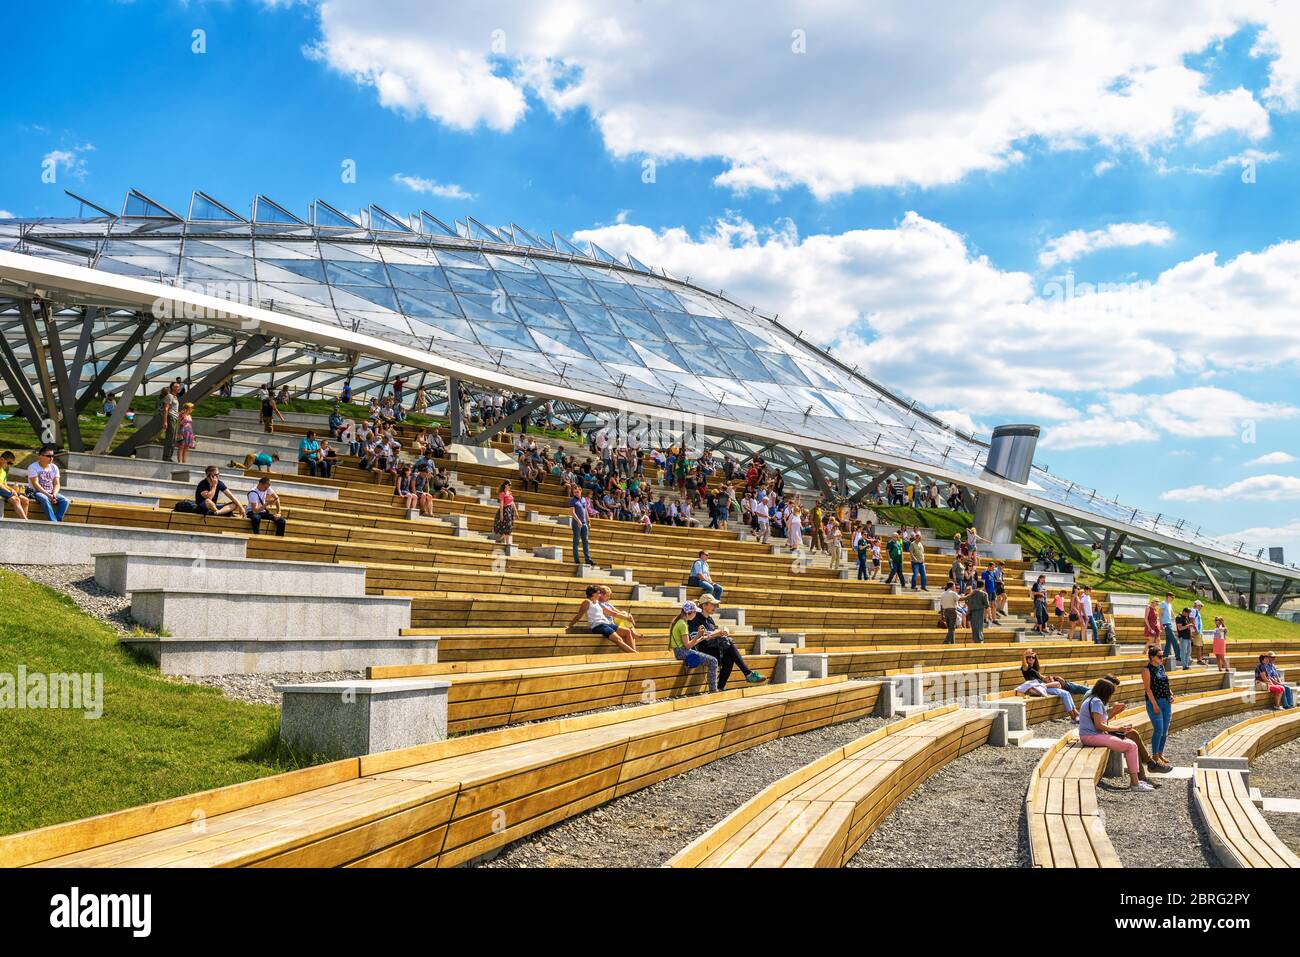 Mosca - 16 giugno 2018: La gente visita il moderno anfiteatro con cupola di vetro nel Parco Zaryadye in estate nel centro di Mosca, Russia. Zaryadye è uno o Foto Stock